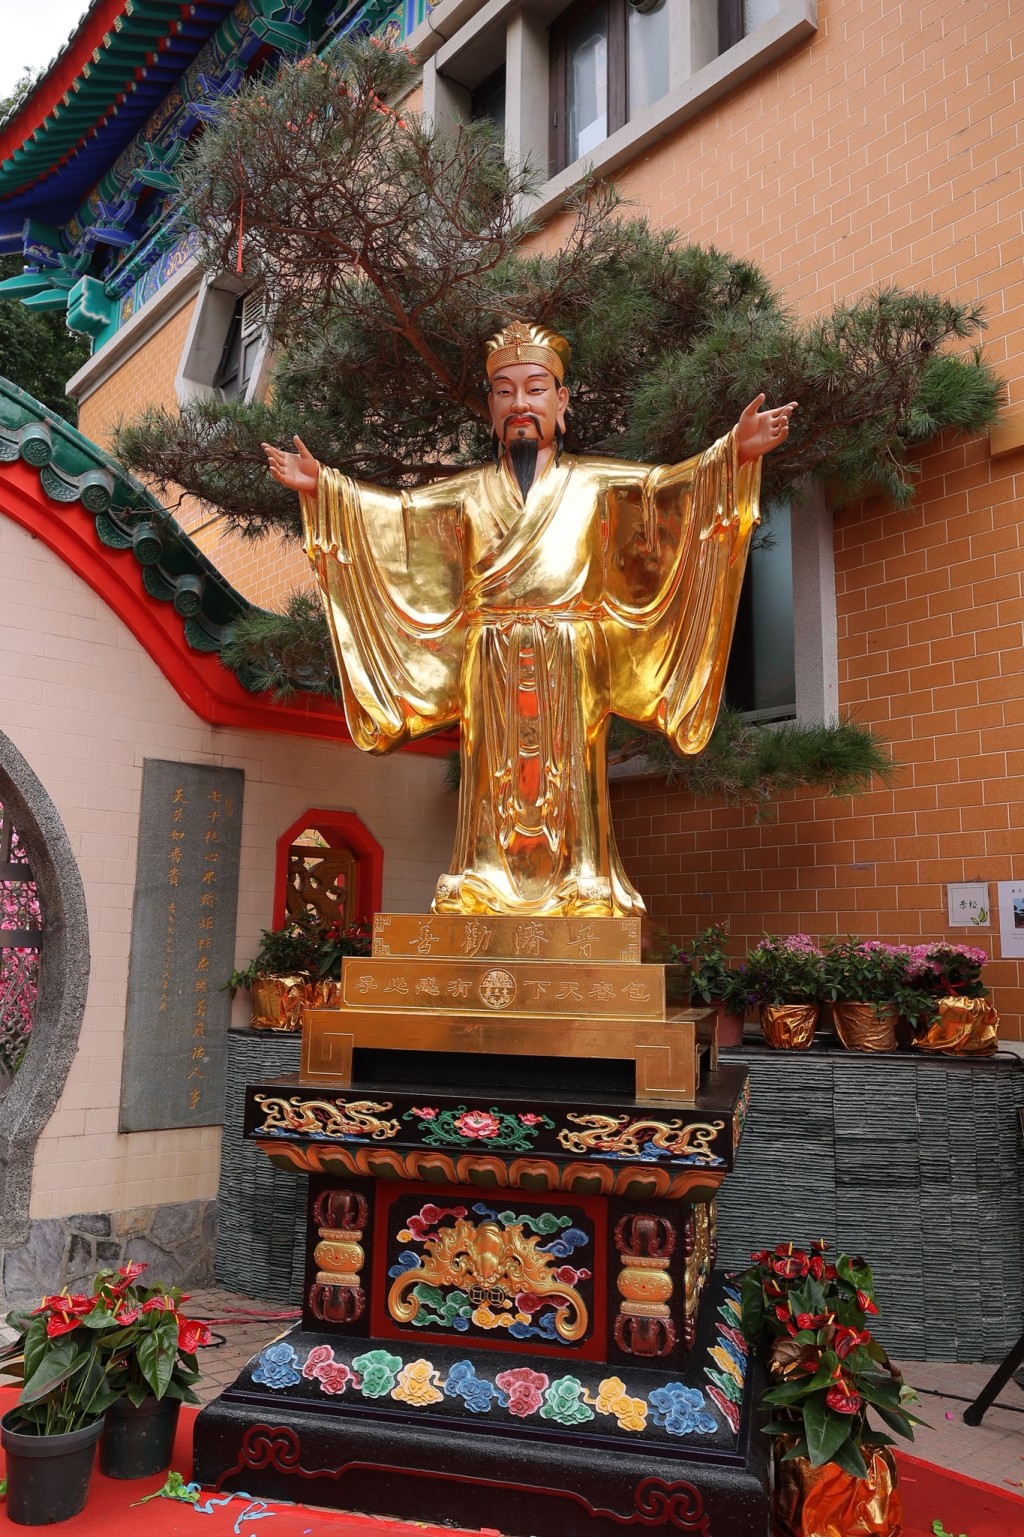 祠内首个黄大仙师金身雕像「大仙包容天下」。黄大仙祠fb